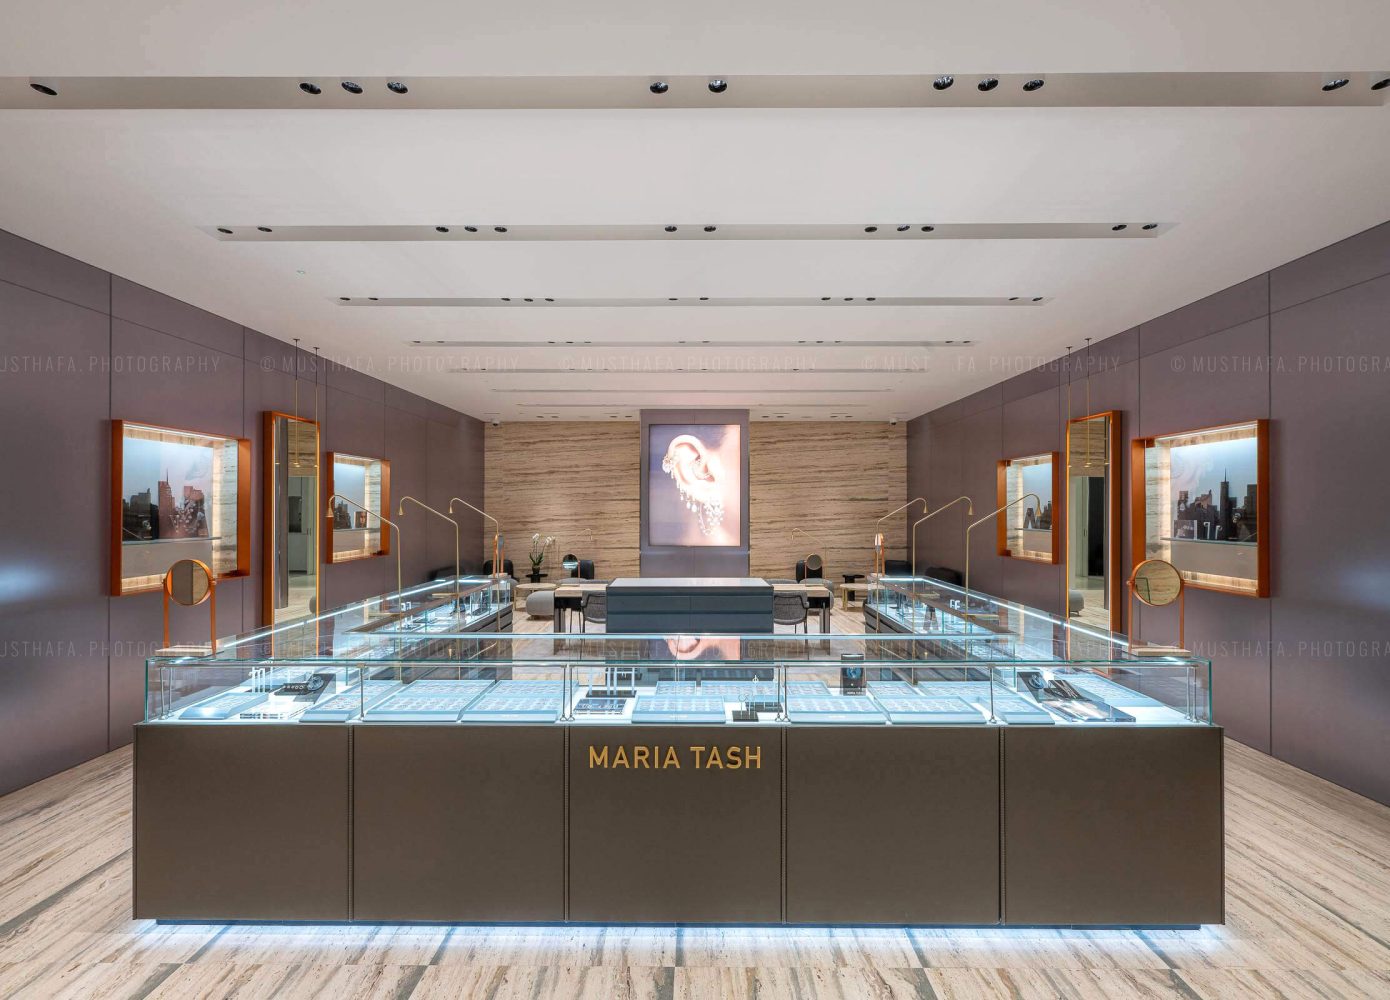 Maria Tash Avenues Mall Kuwait Architectural Interior Photographer in Dubai Abu Dhabi UAE Riyadh Retail Specialist 02